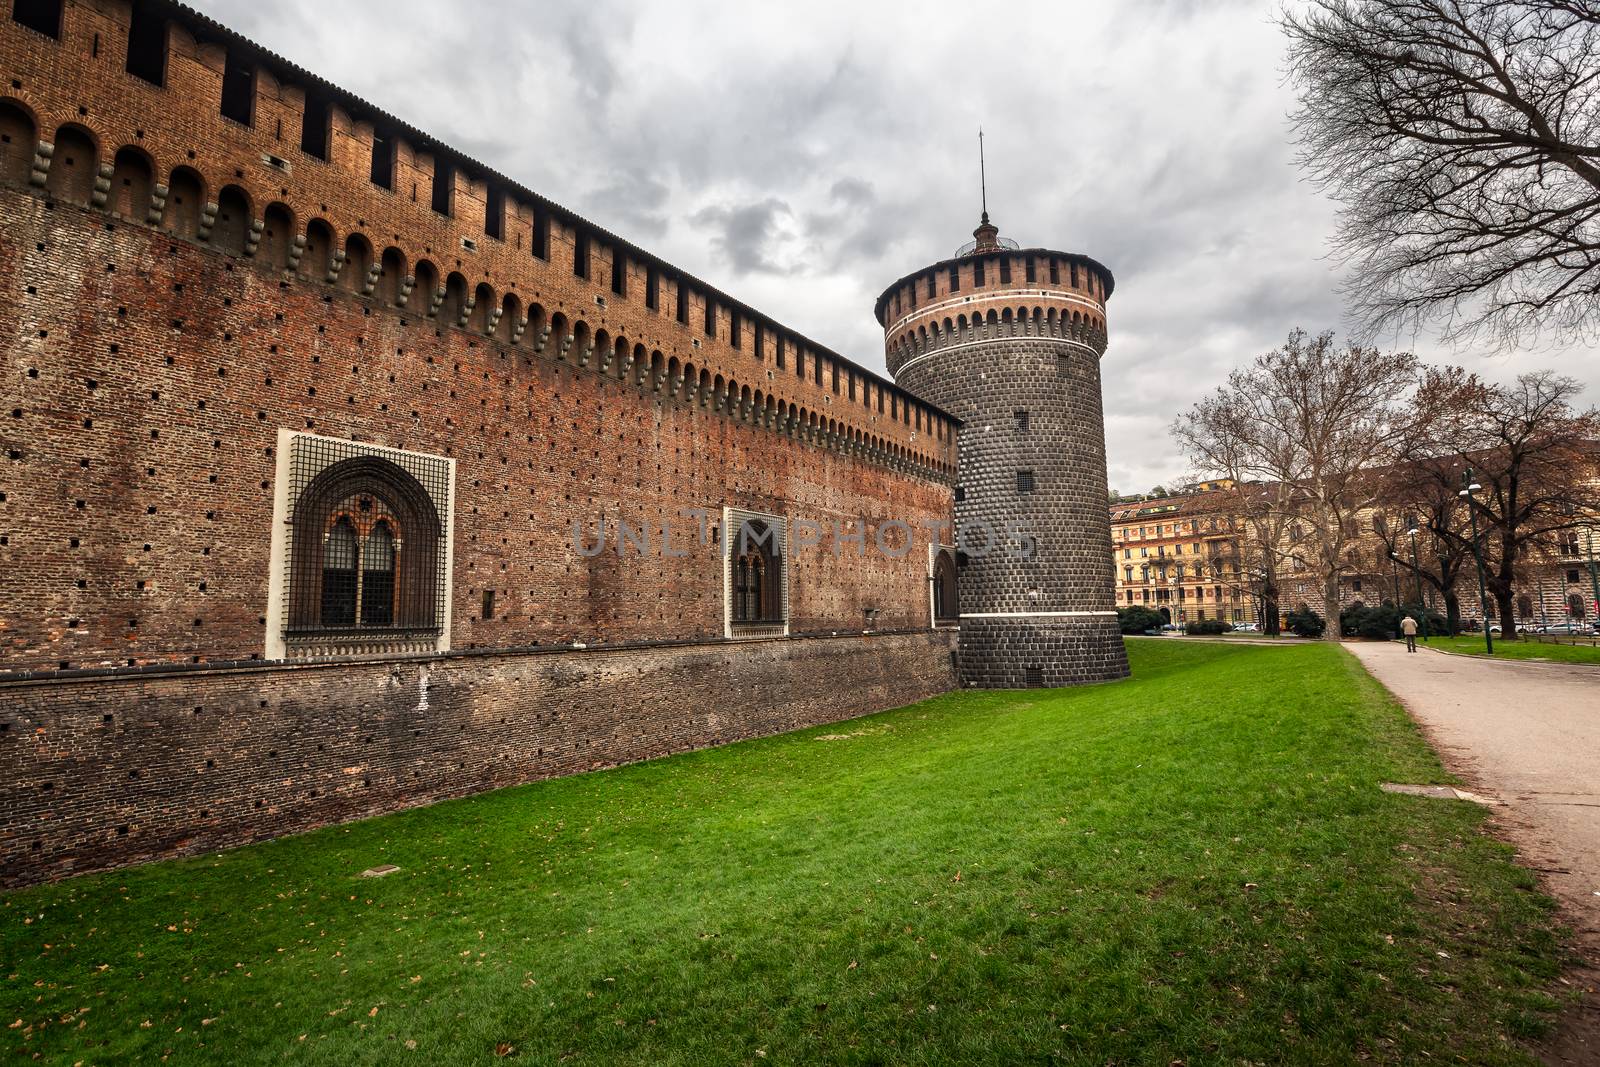 The Outer Wall of Castello Sforzesco (Sforza Castle) in Milan, Italy